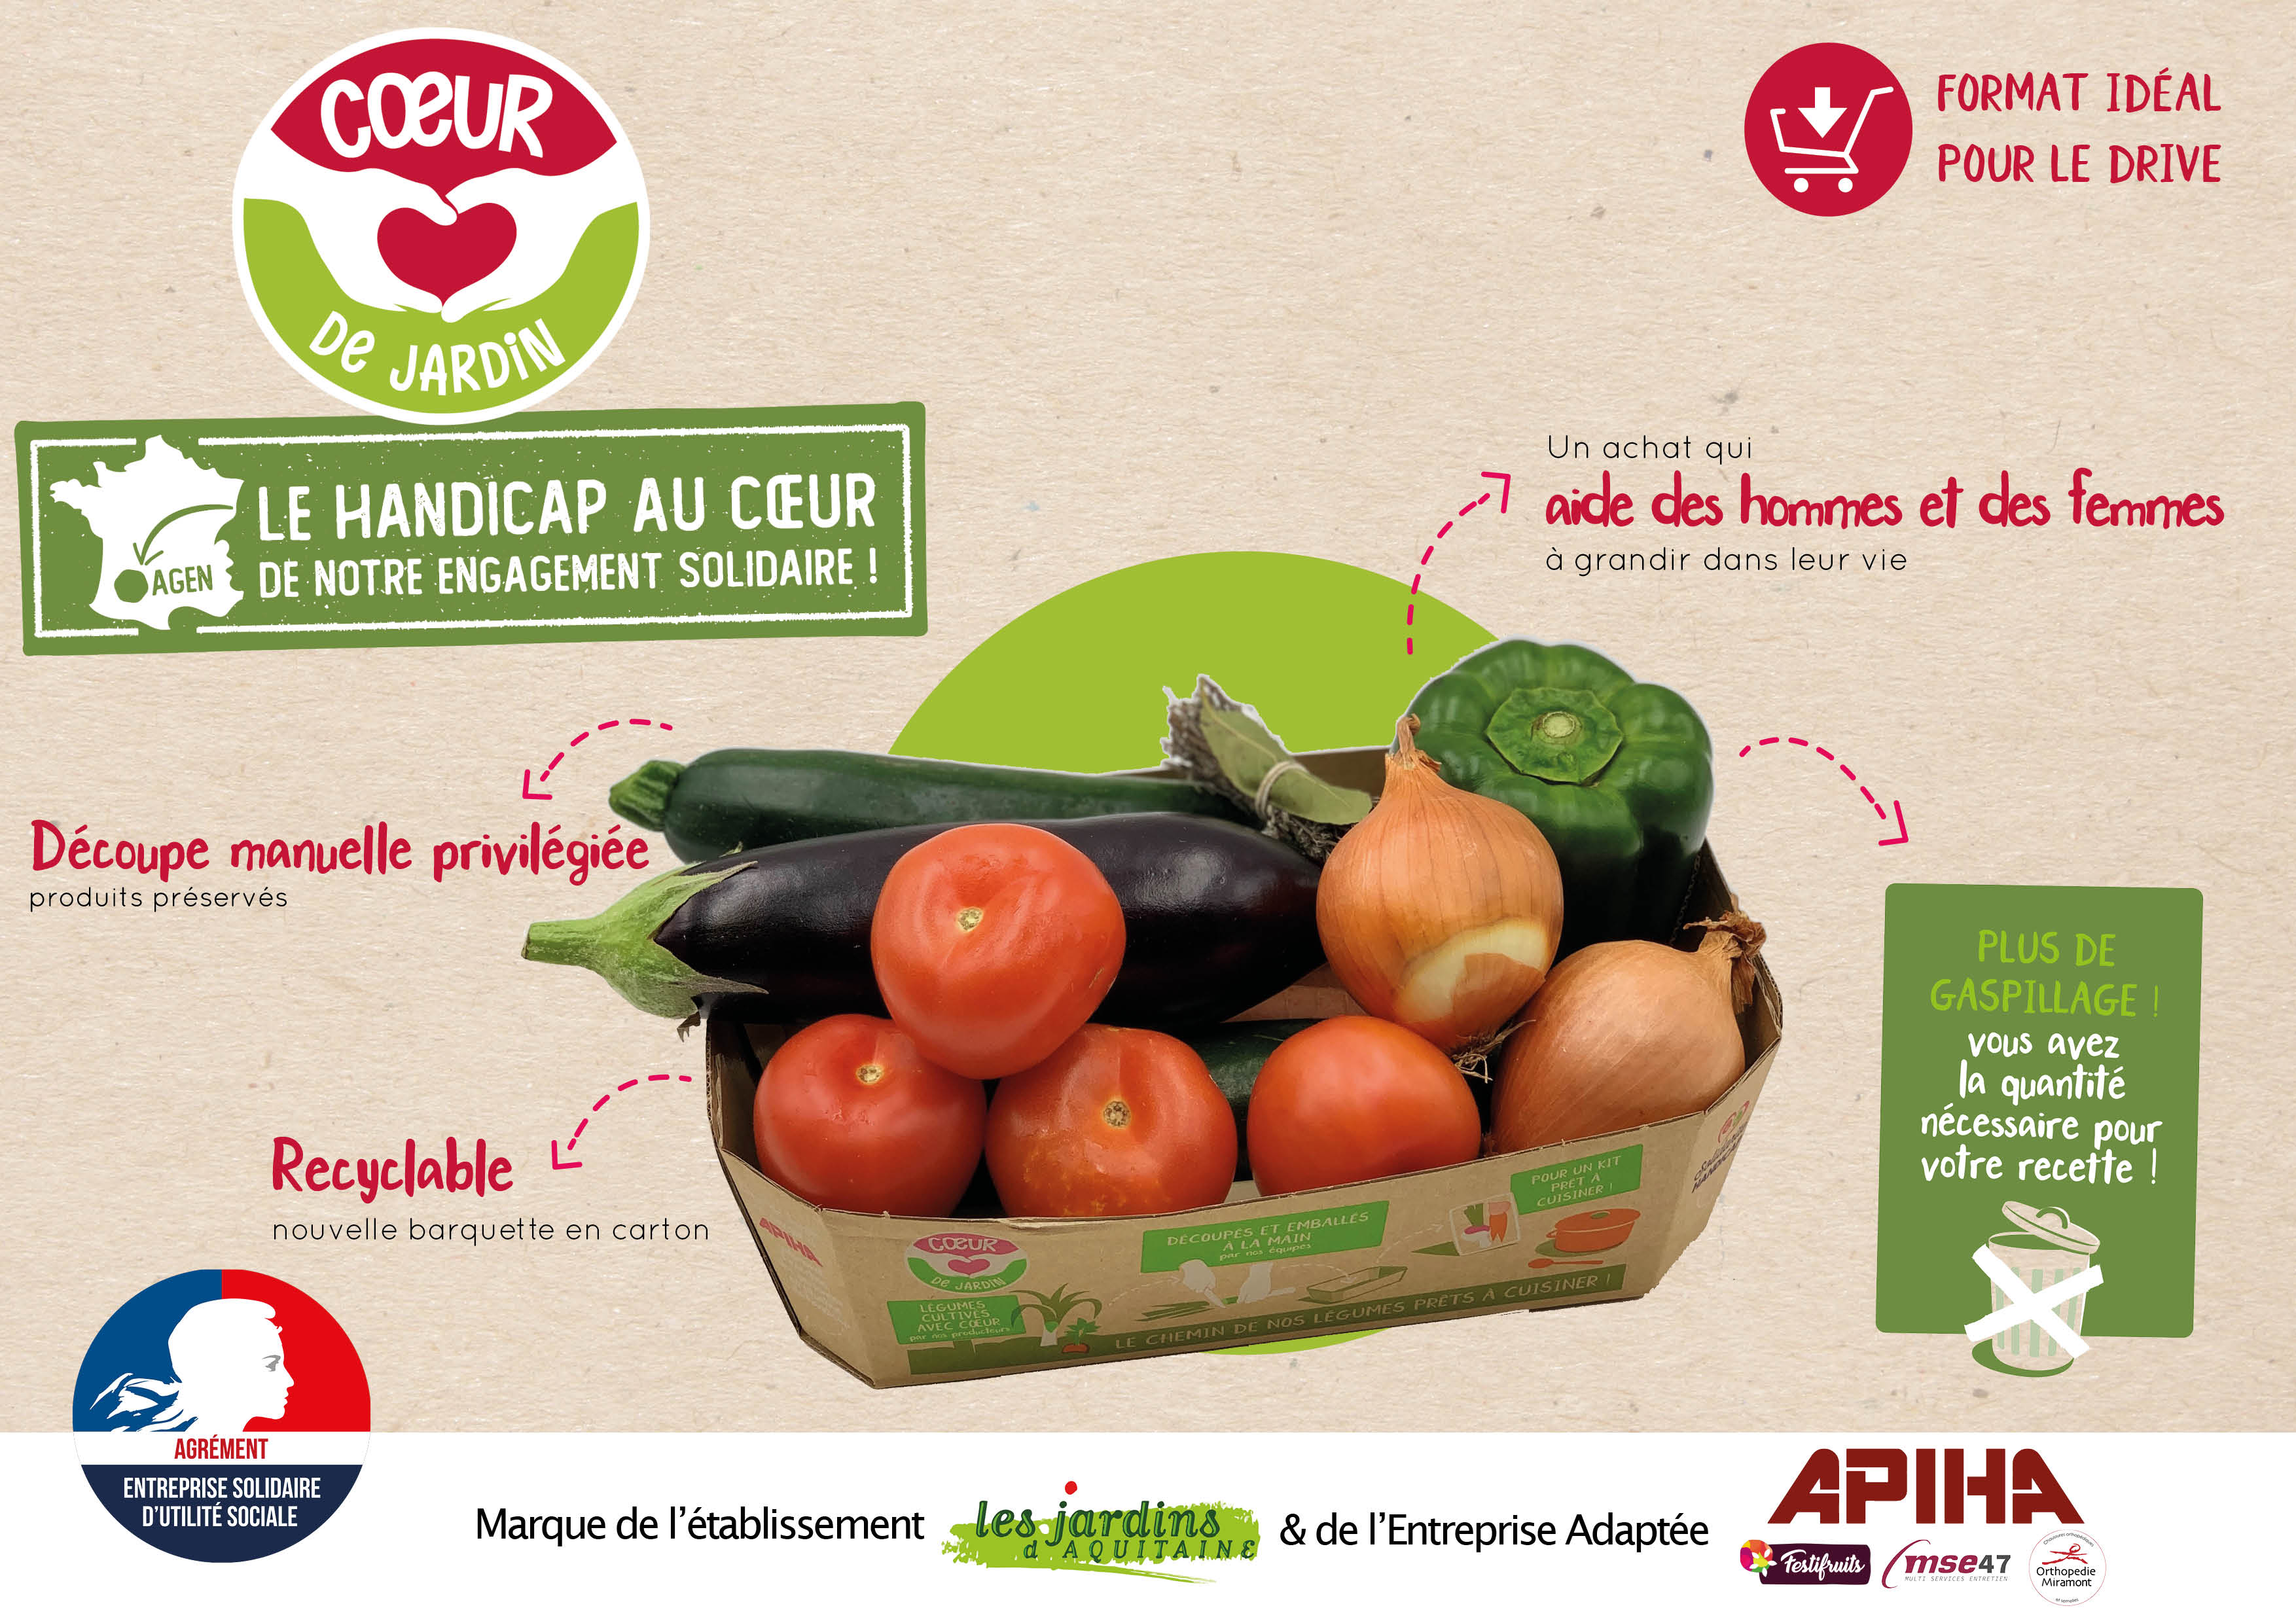 APIHA - LES JARDINS D'AQUITAINE, Conditionnement de Fruits et Légumes pour la Grande Distribution